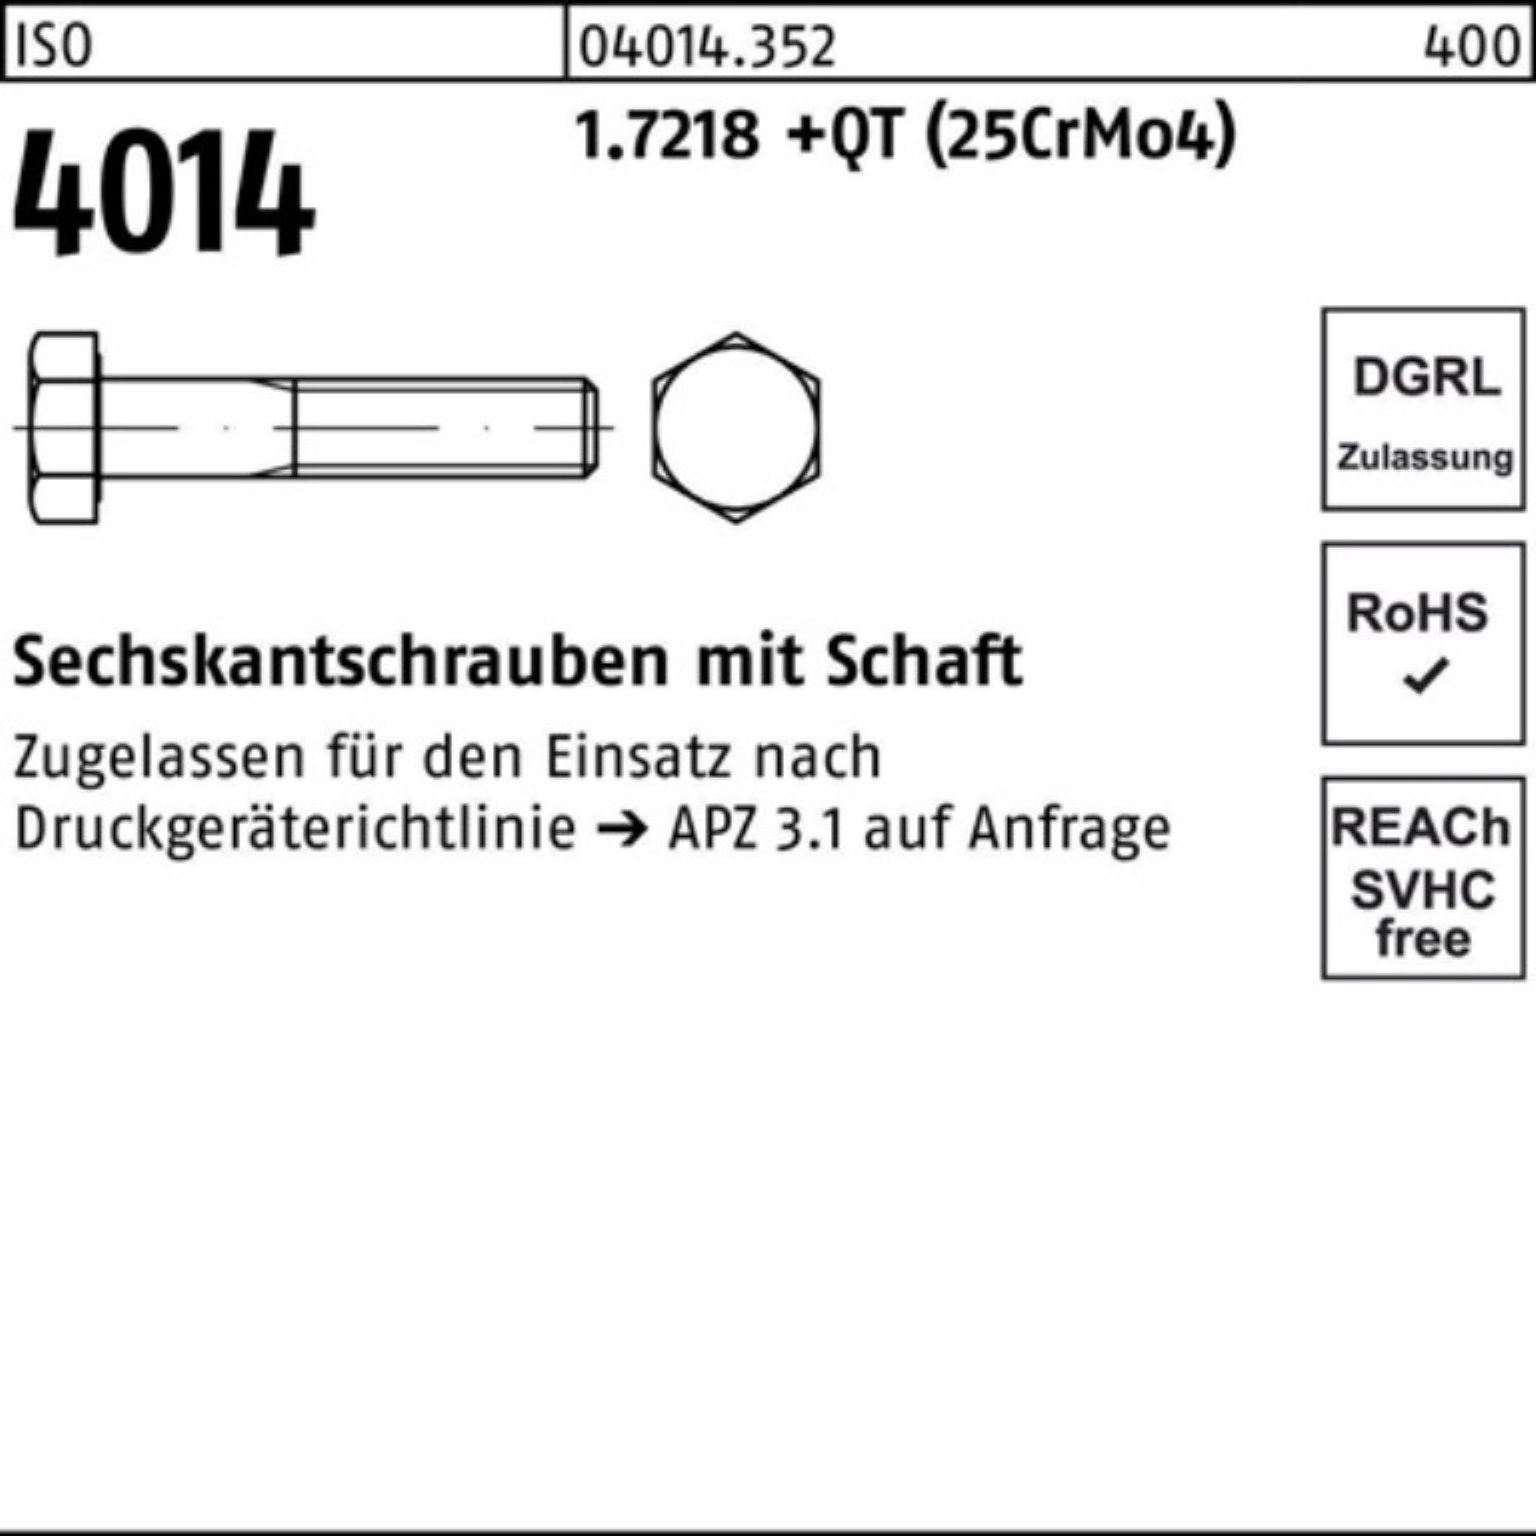 Bufab Sechskantschraube 100er ISO M27x Sechskantschraube 1.7218 Pack 4014 +QT (25Cr 200 Schaft